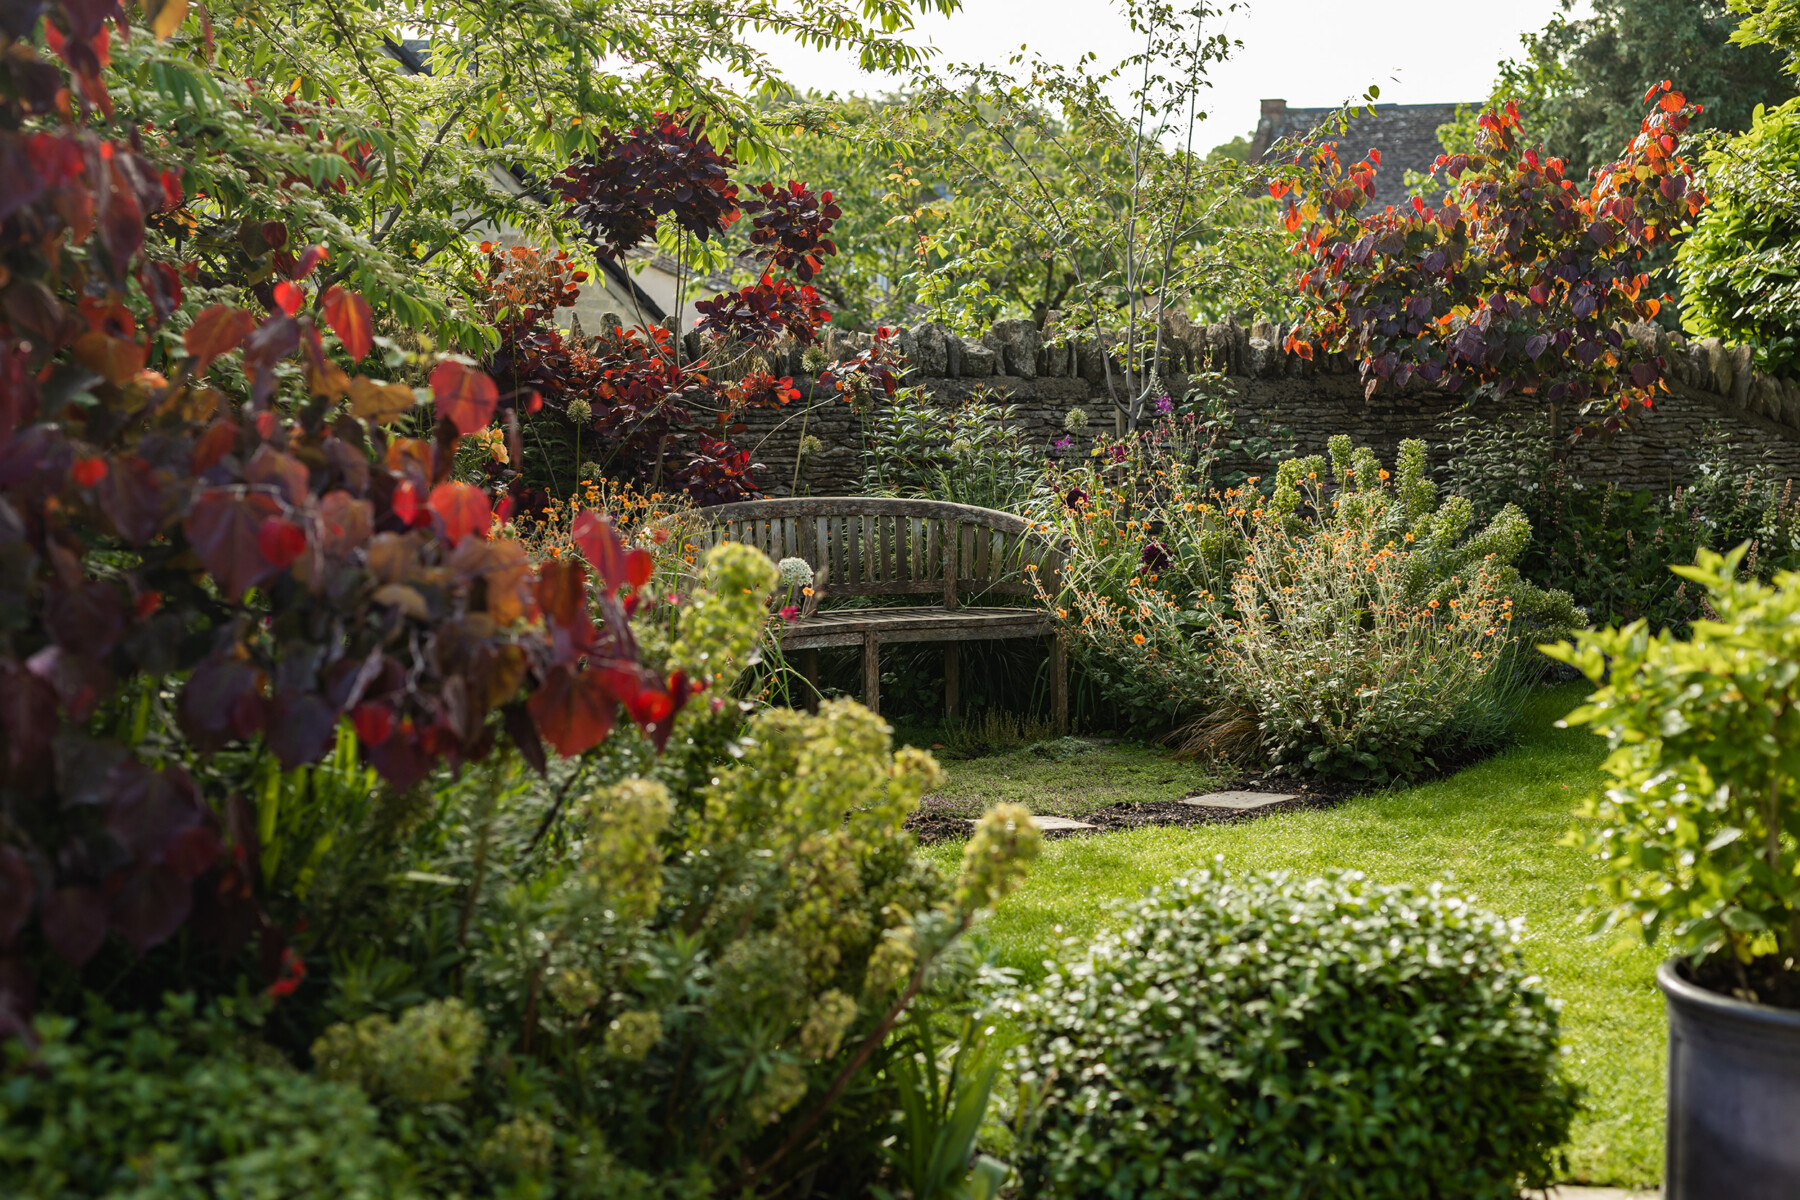 Nicholsons Garden Design - A Hidden Gem